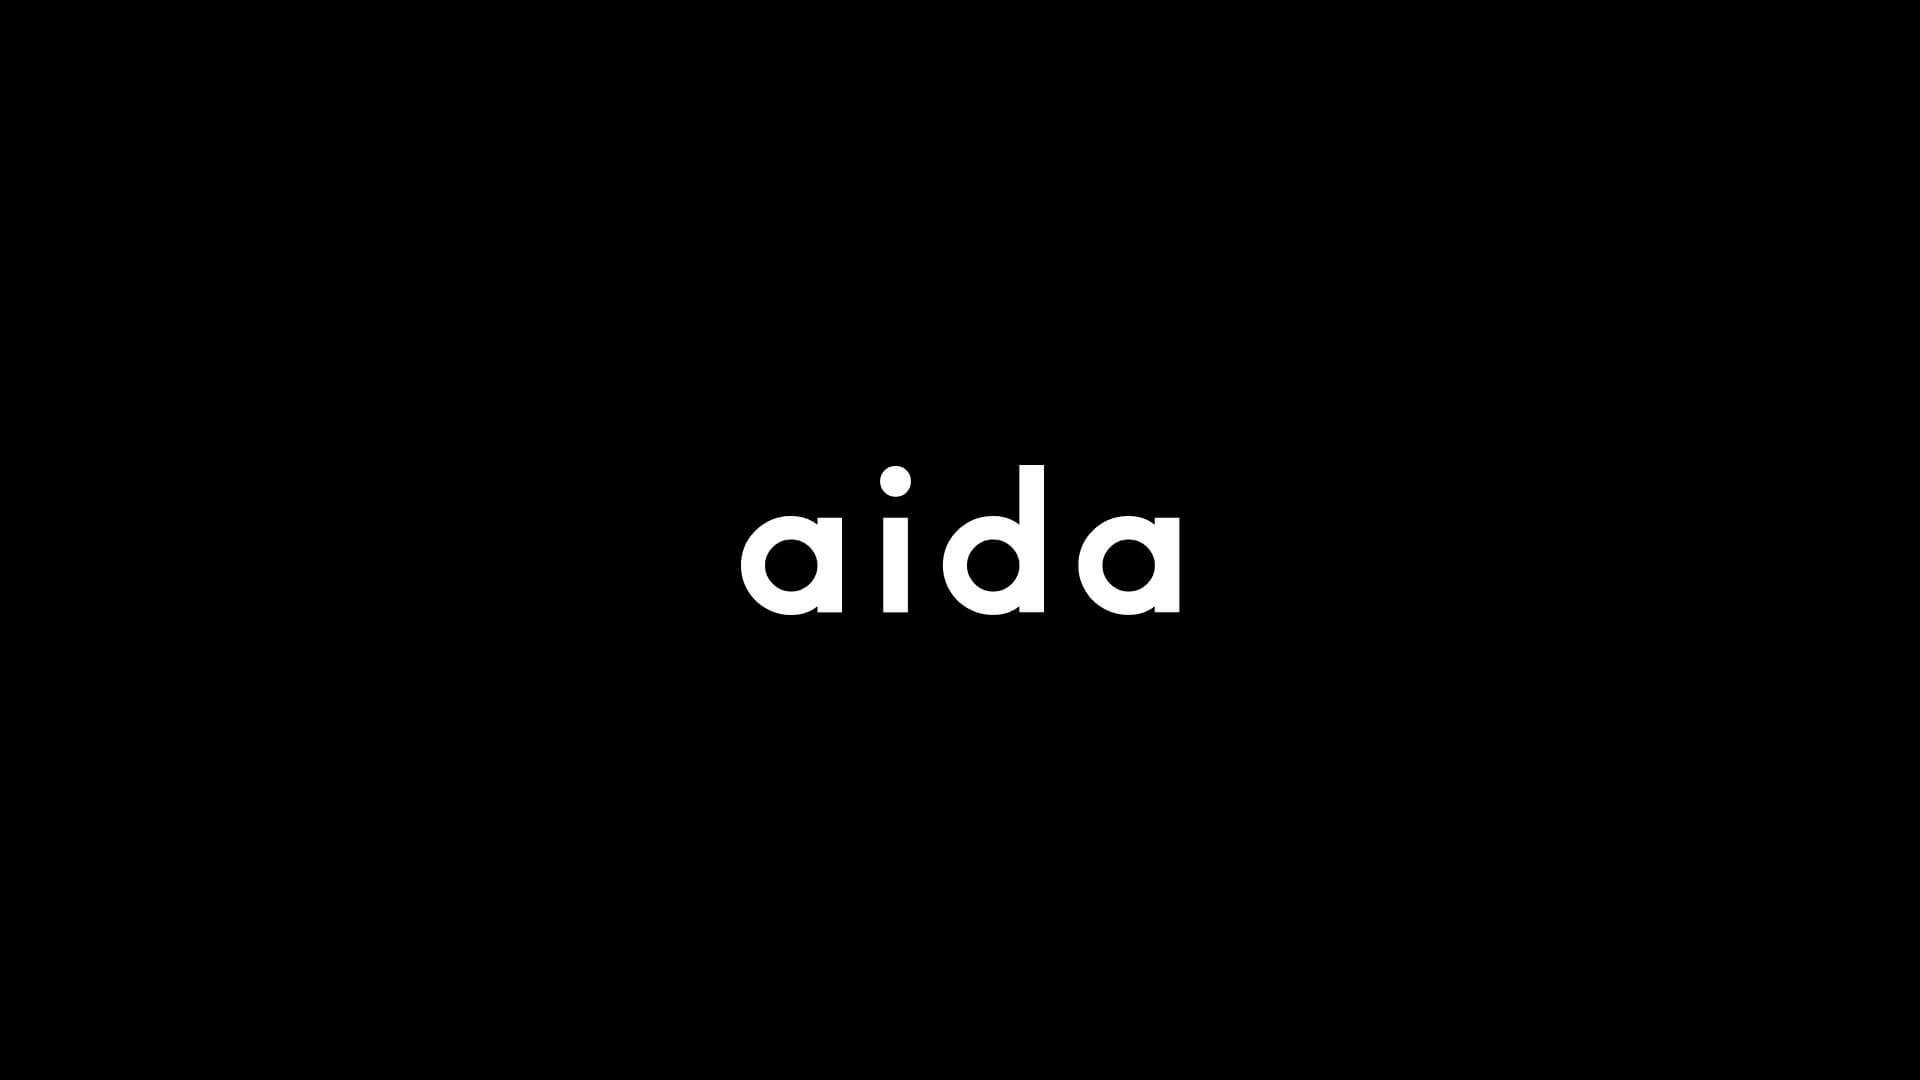 Aida wordmark